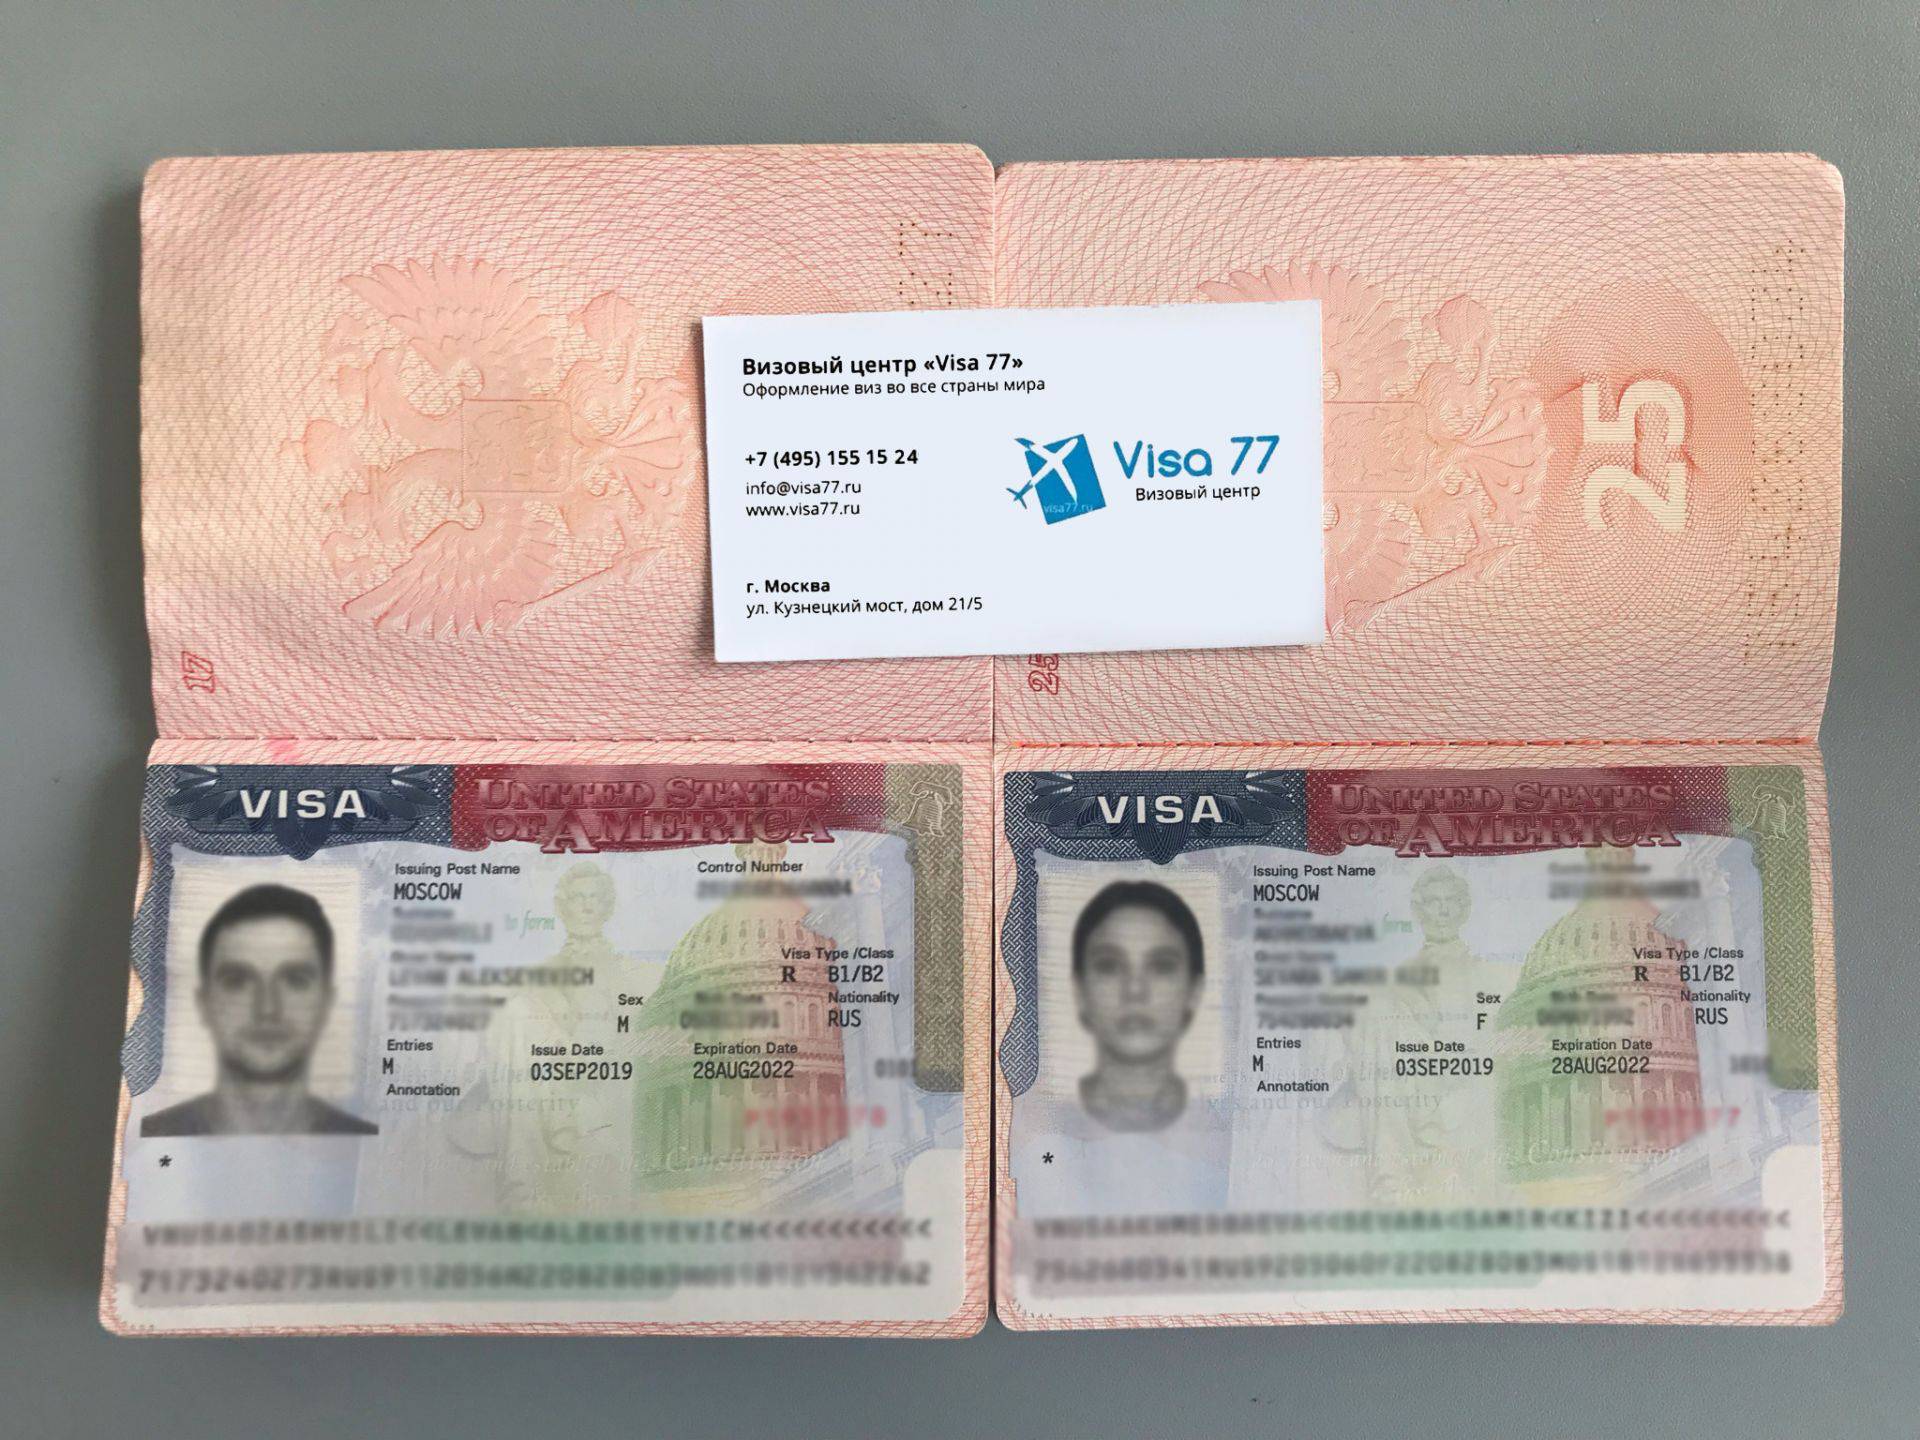 Как получить рабочую визу в сша: пошаговое руководство (фото + видео)